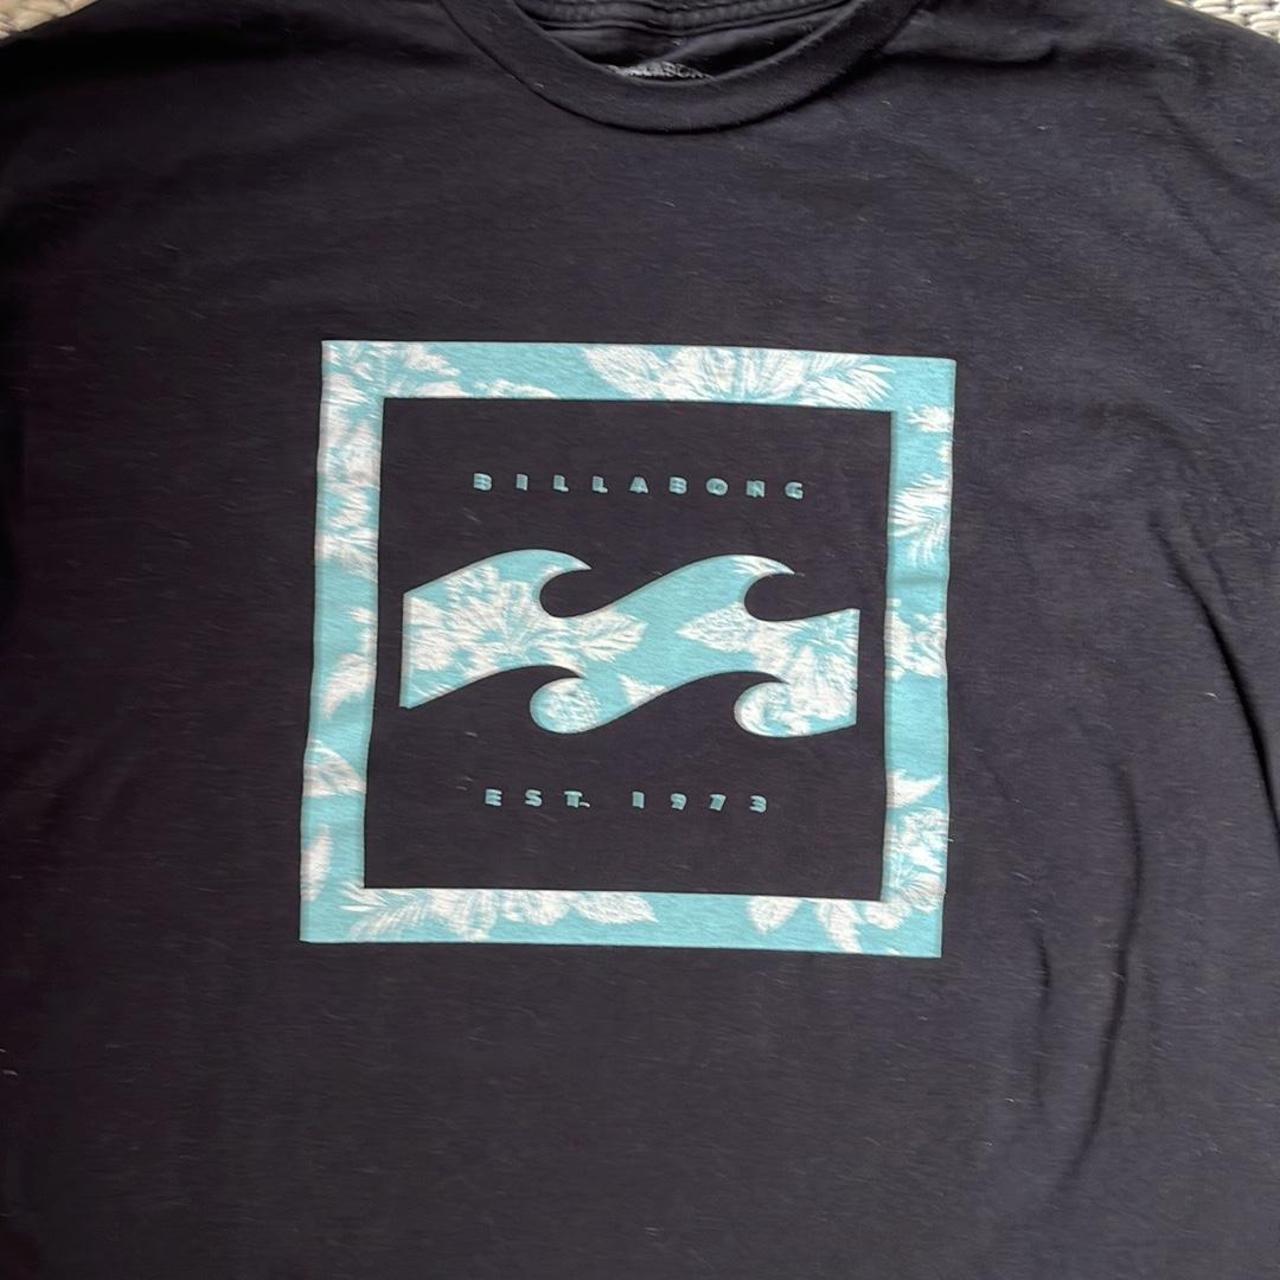 Product Image 2 - Billabong Mens Logo Black T-Shirt
Tag